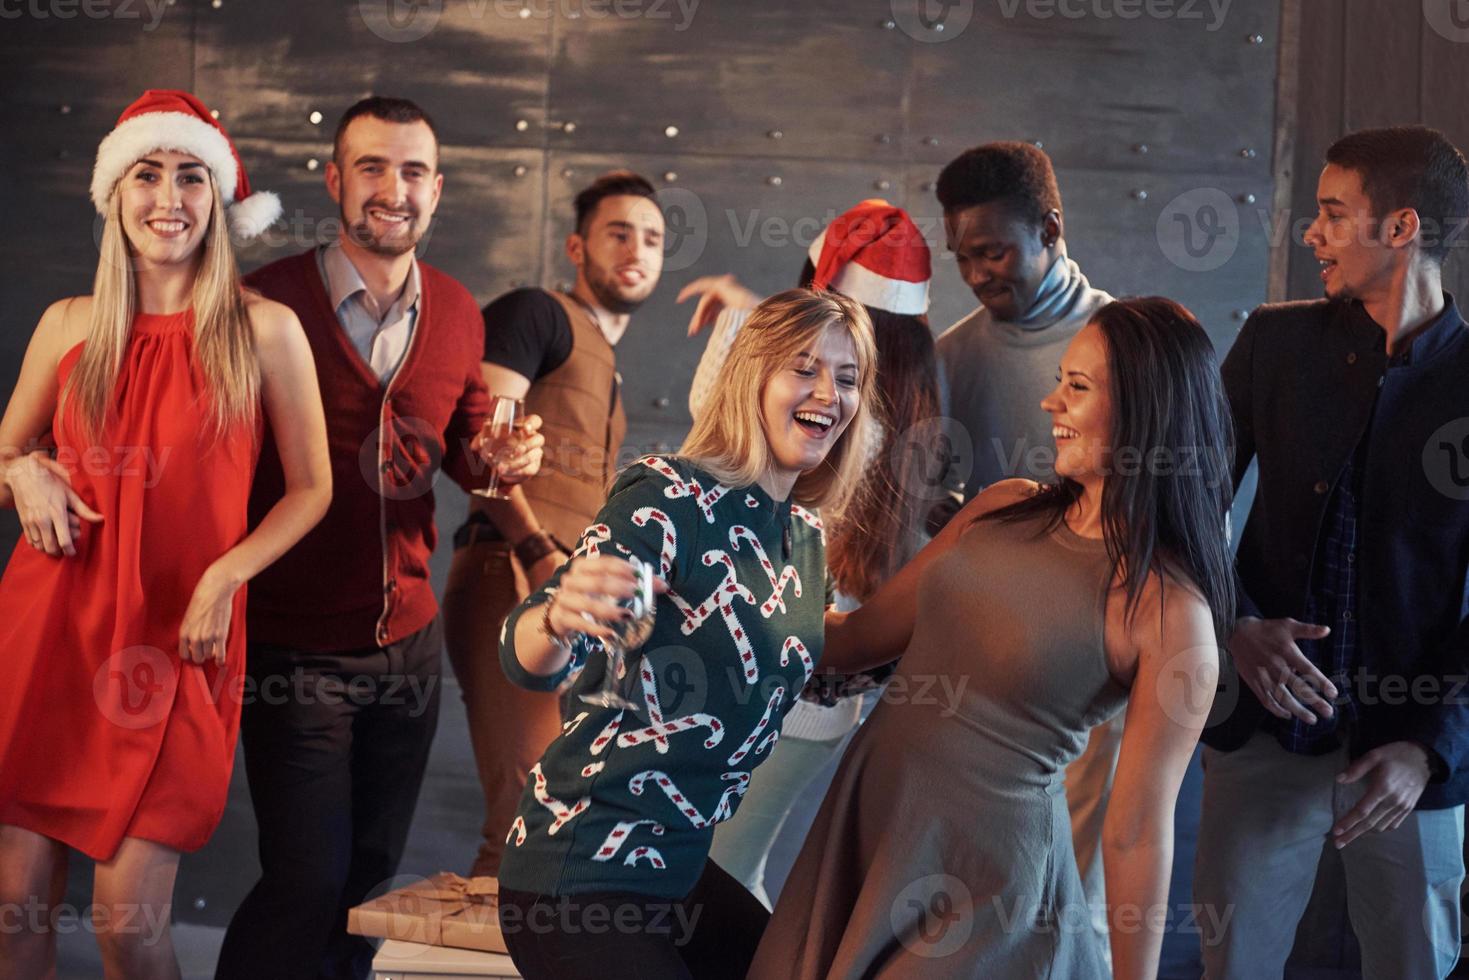 festa med vänner. de älskar julen. grupp glada ungdomar som bär tomtebloss och champagneflöjter som dansar i nyårsfest och ser glada ut. begrepp om samhörighetslivsstil foto